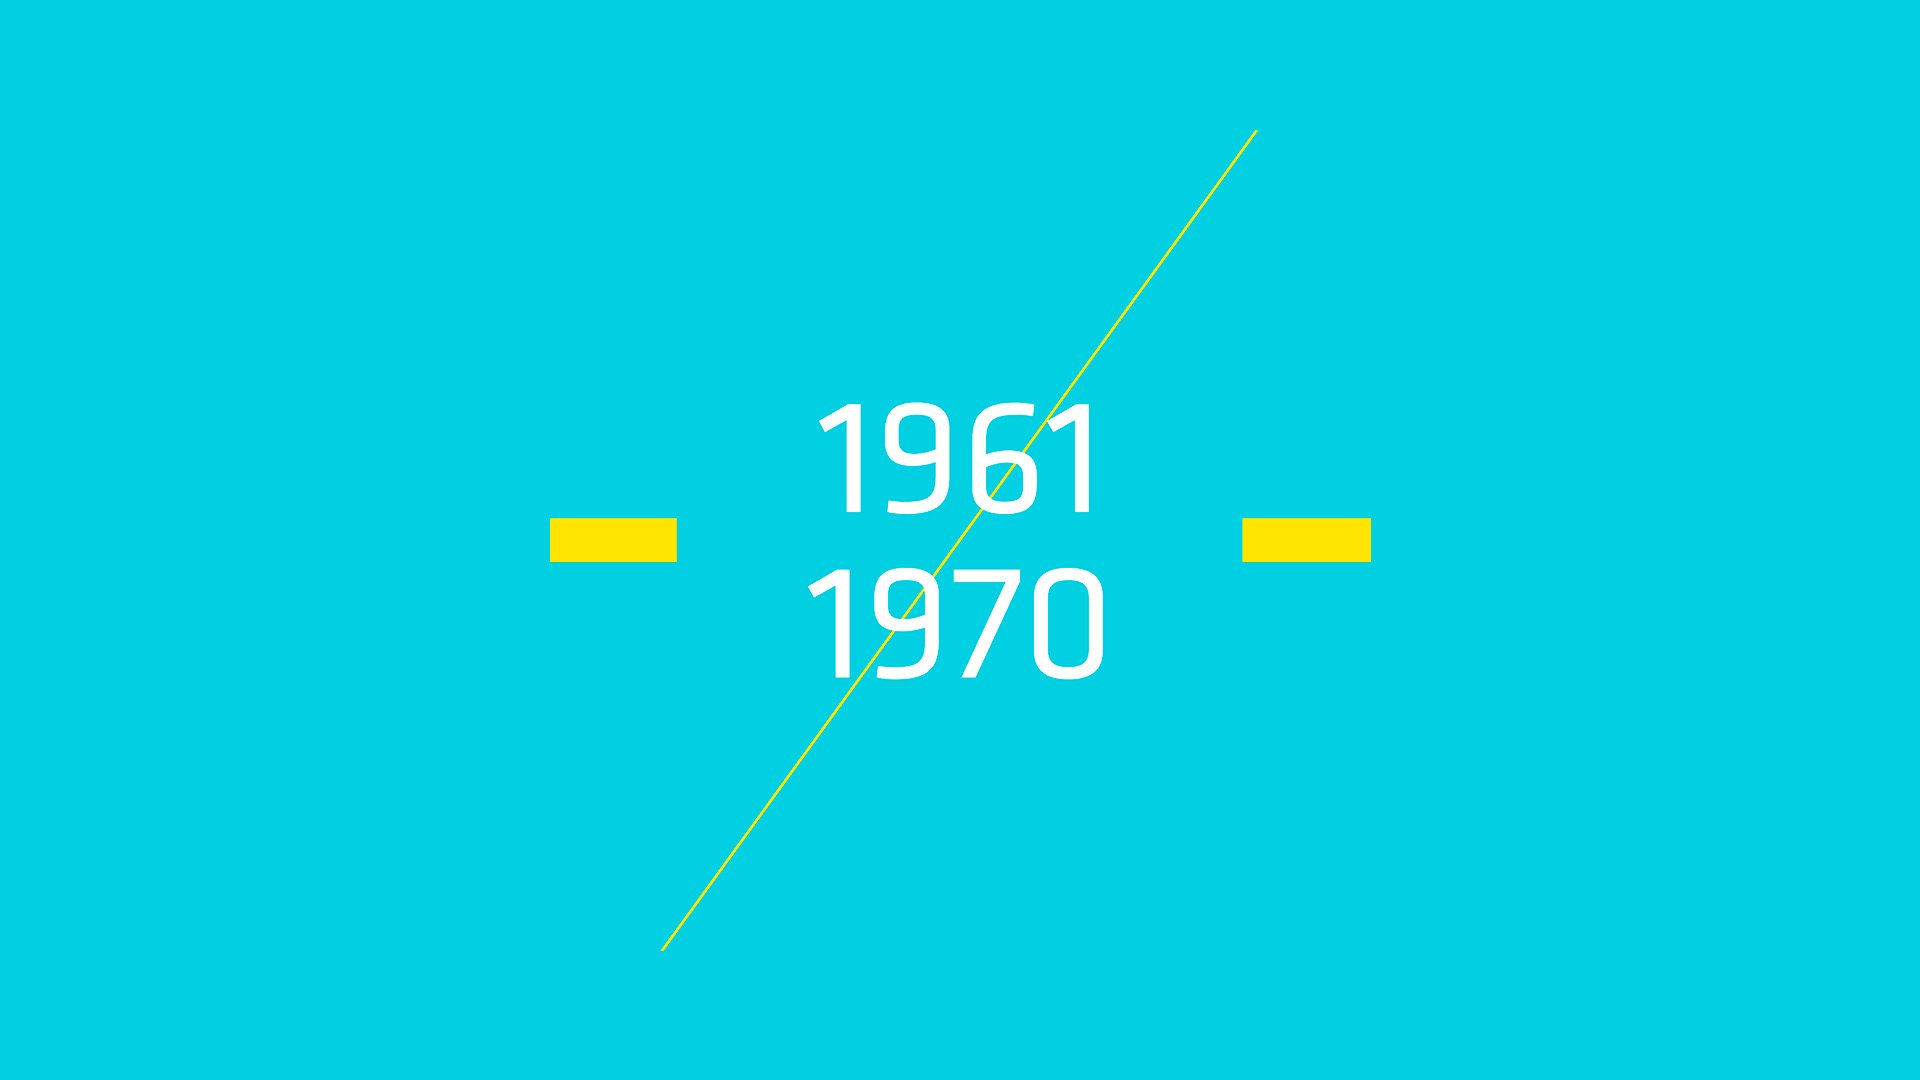 1961-1970